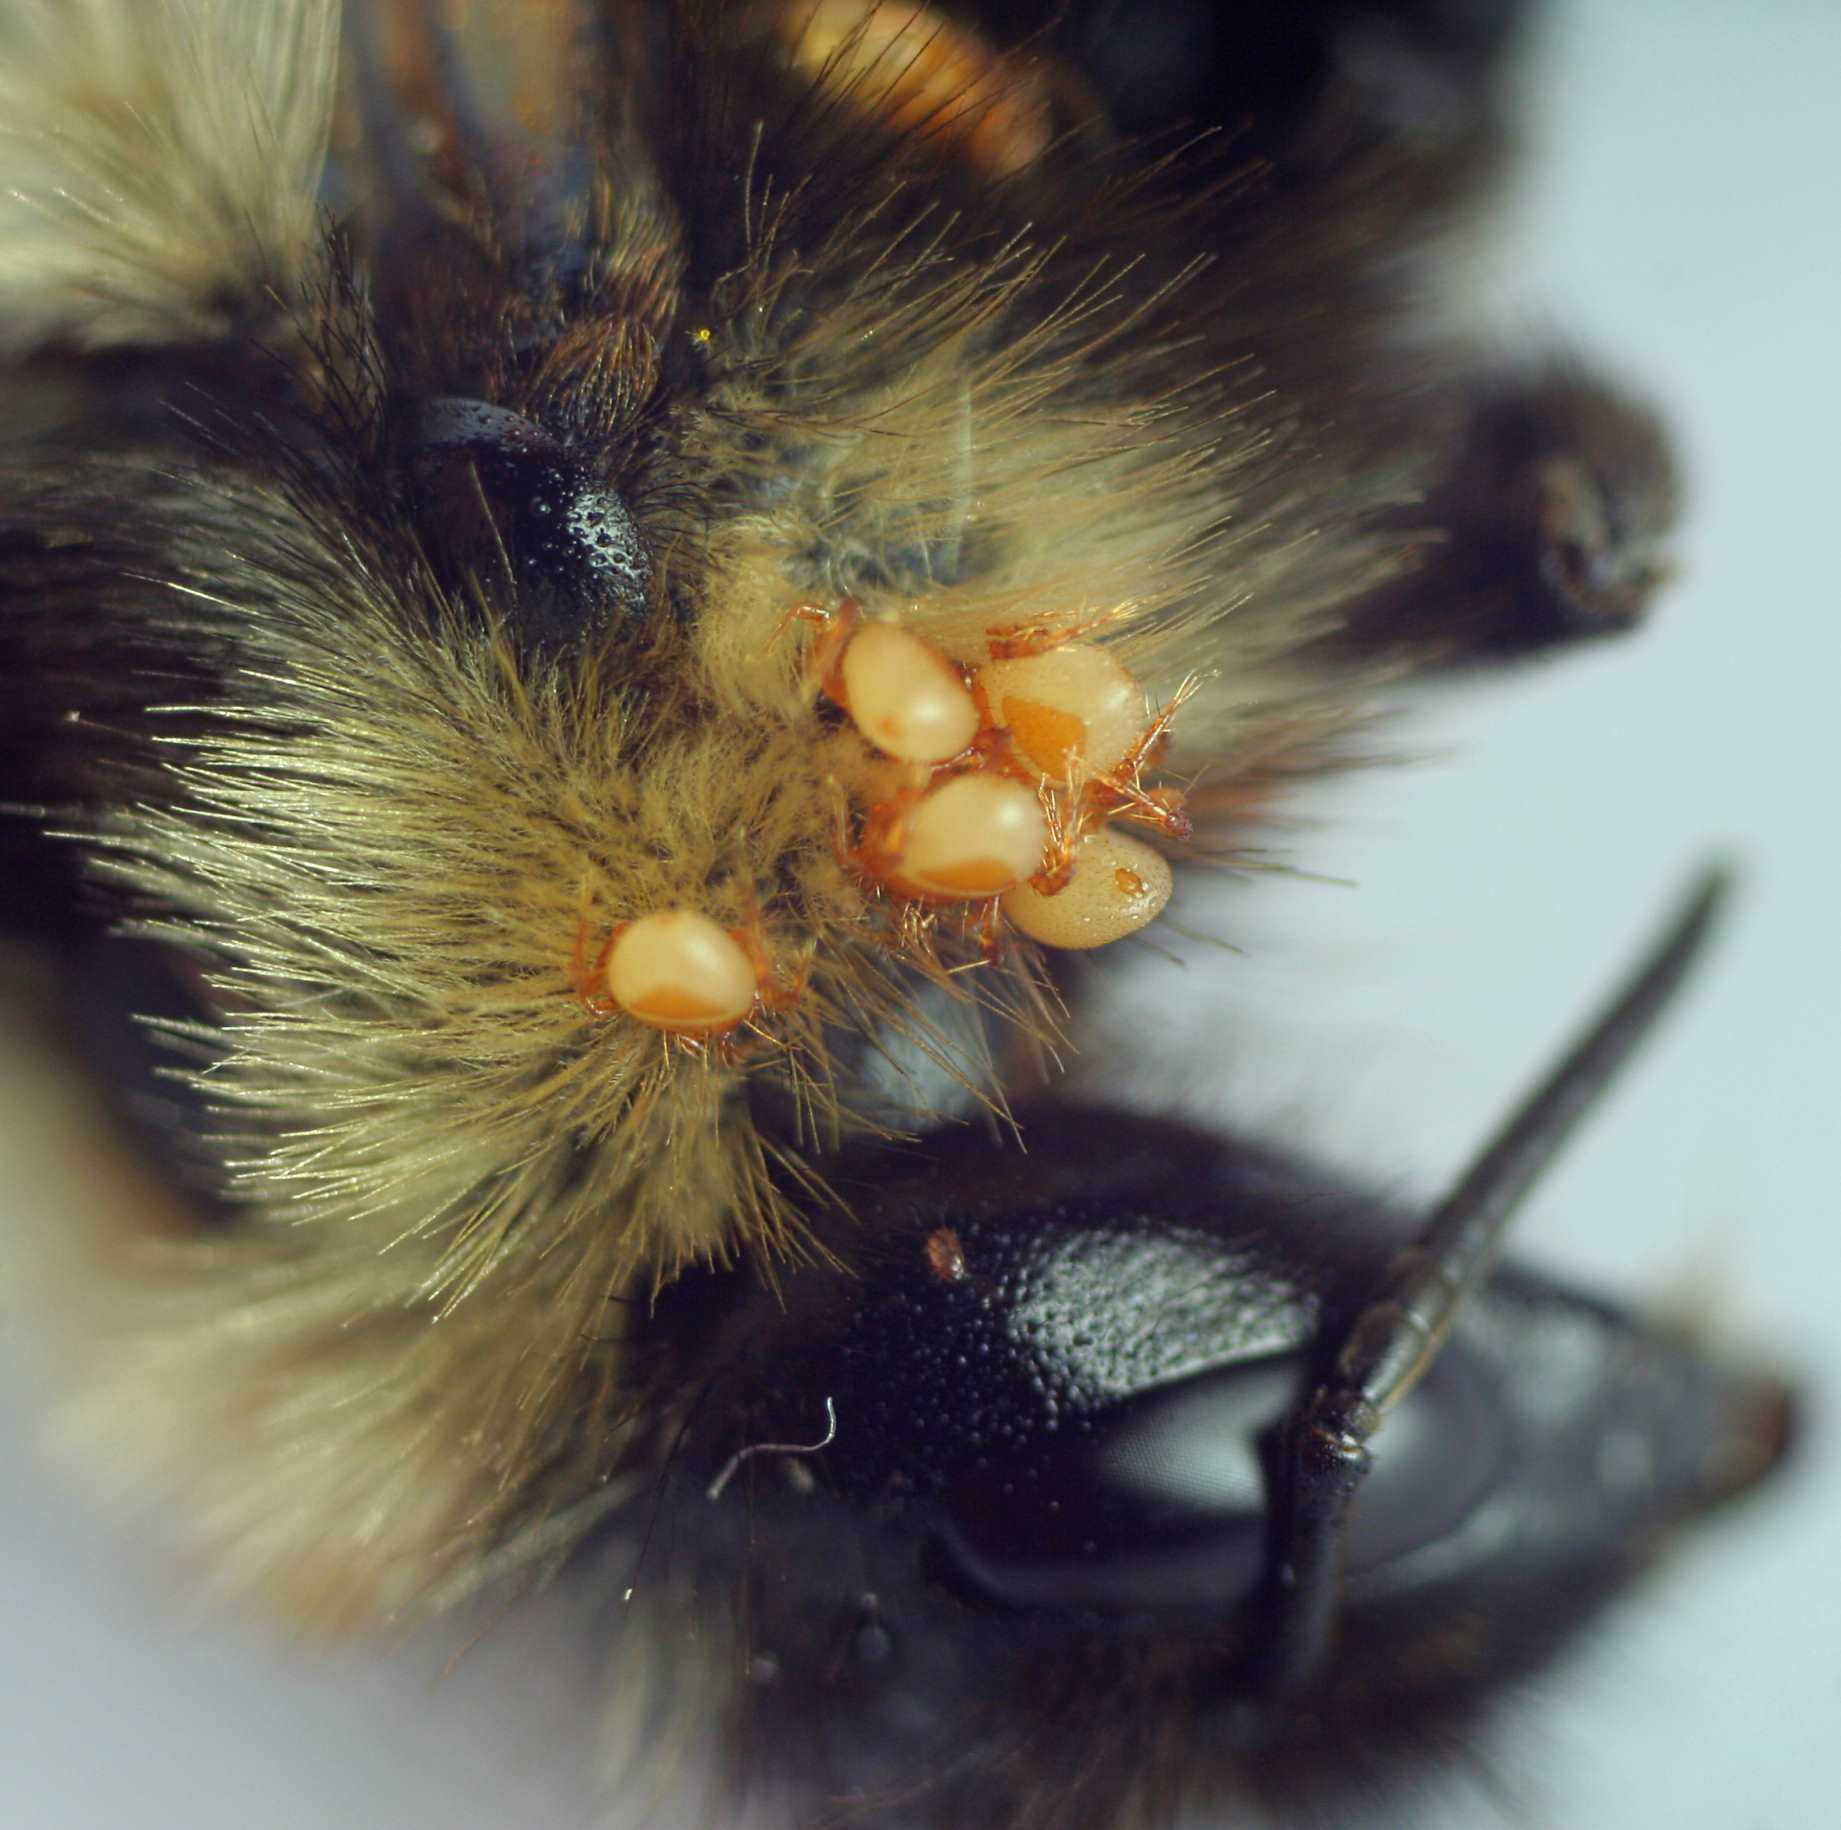 Болезни пчел и расплода: гнильцы, паразитарные заболевания, вирусы и инвазивные болезни - краткое описание